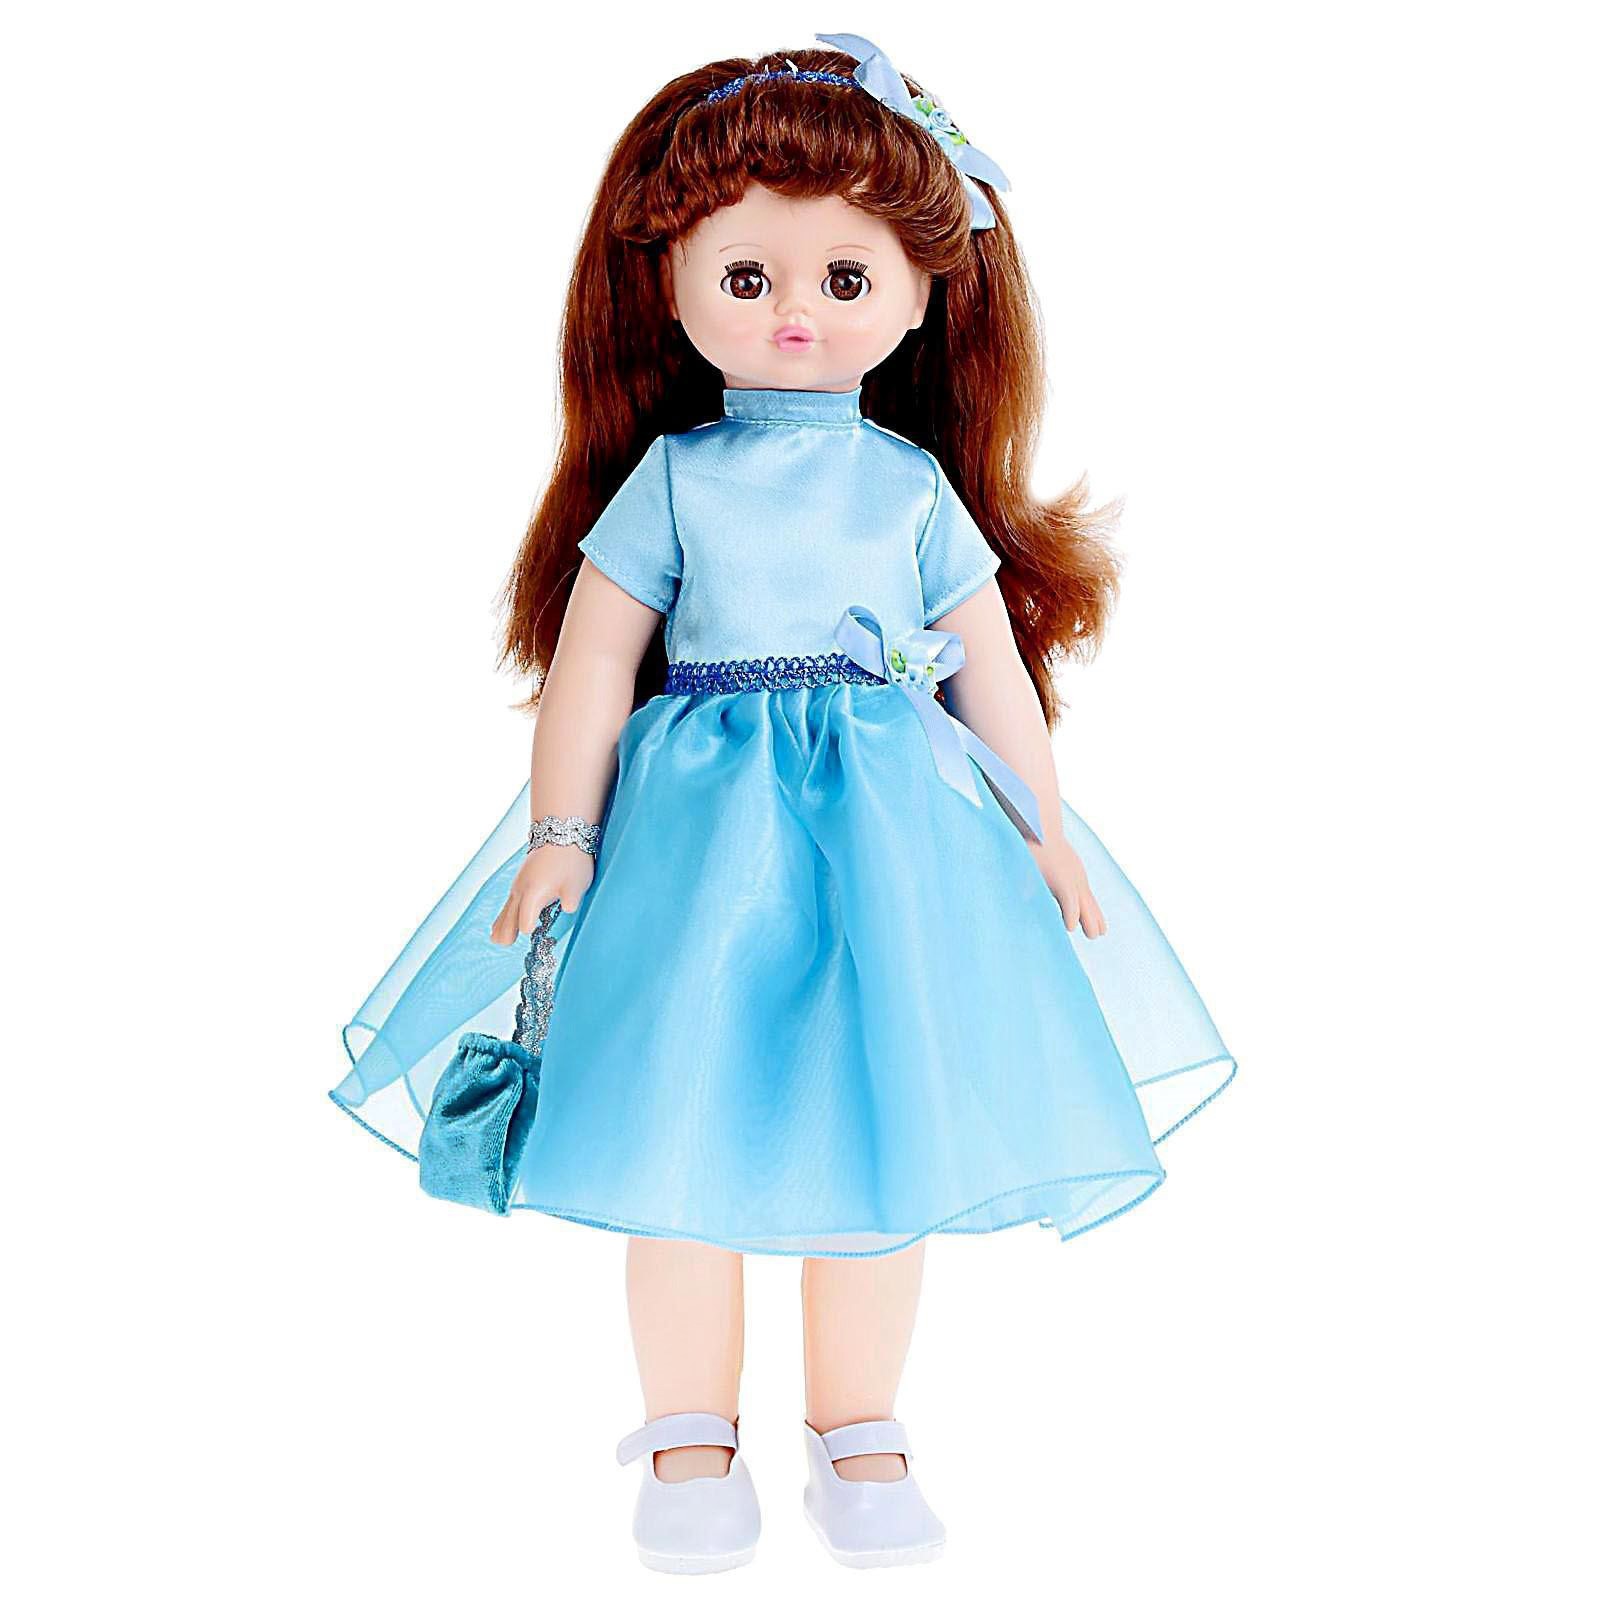 Кукла Весна Алиса 11 со звуковым устройством и механизмом движения кукла алиса 11 со звуковым устройством и механизмом движения